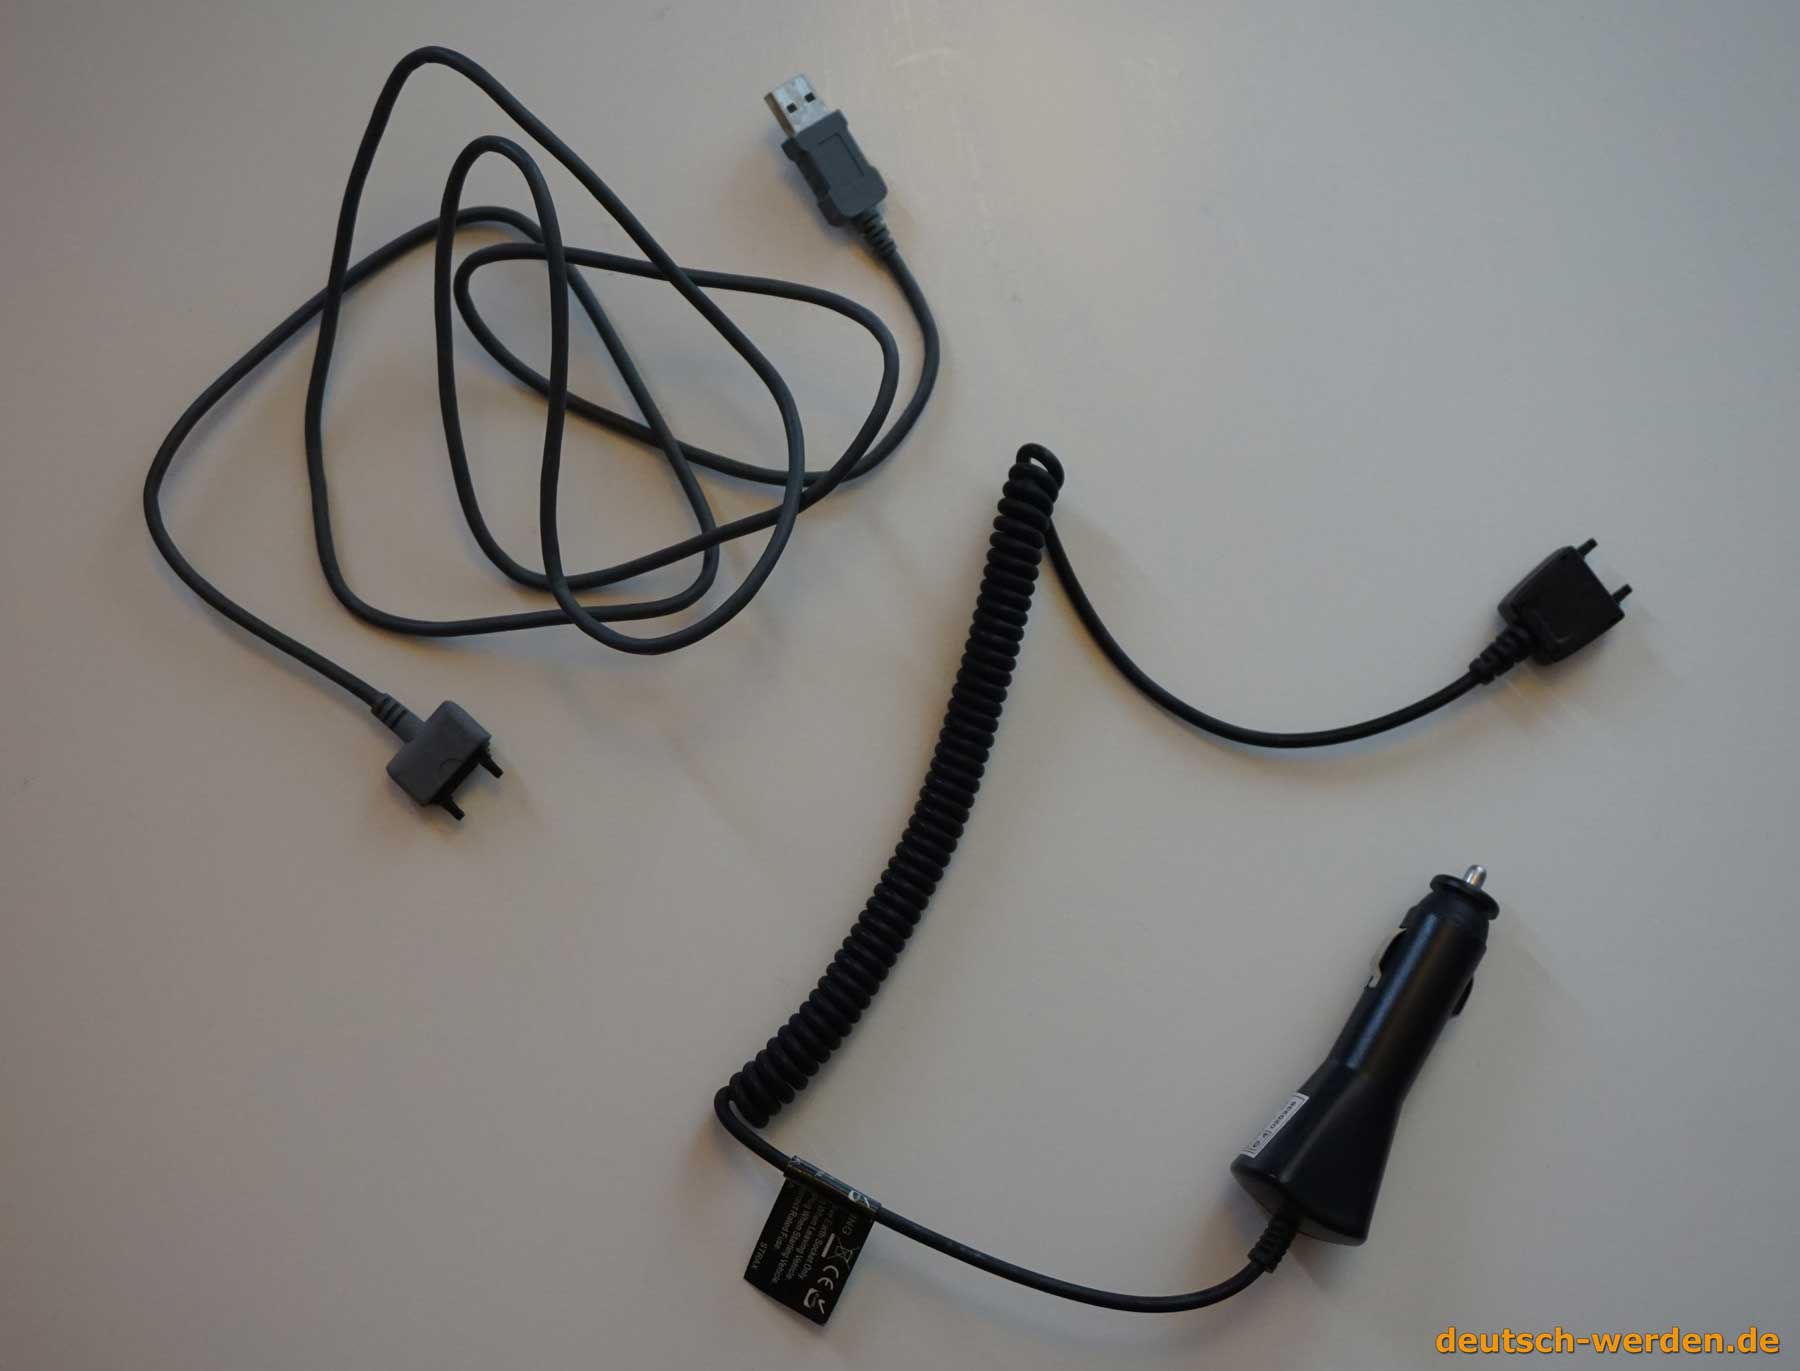 Sony Kabel für K660i K750i K770i K800i K810